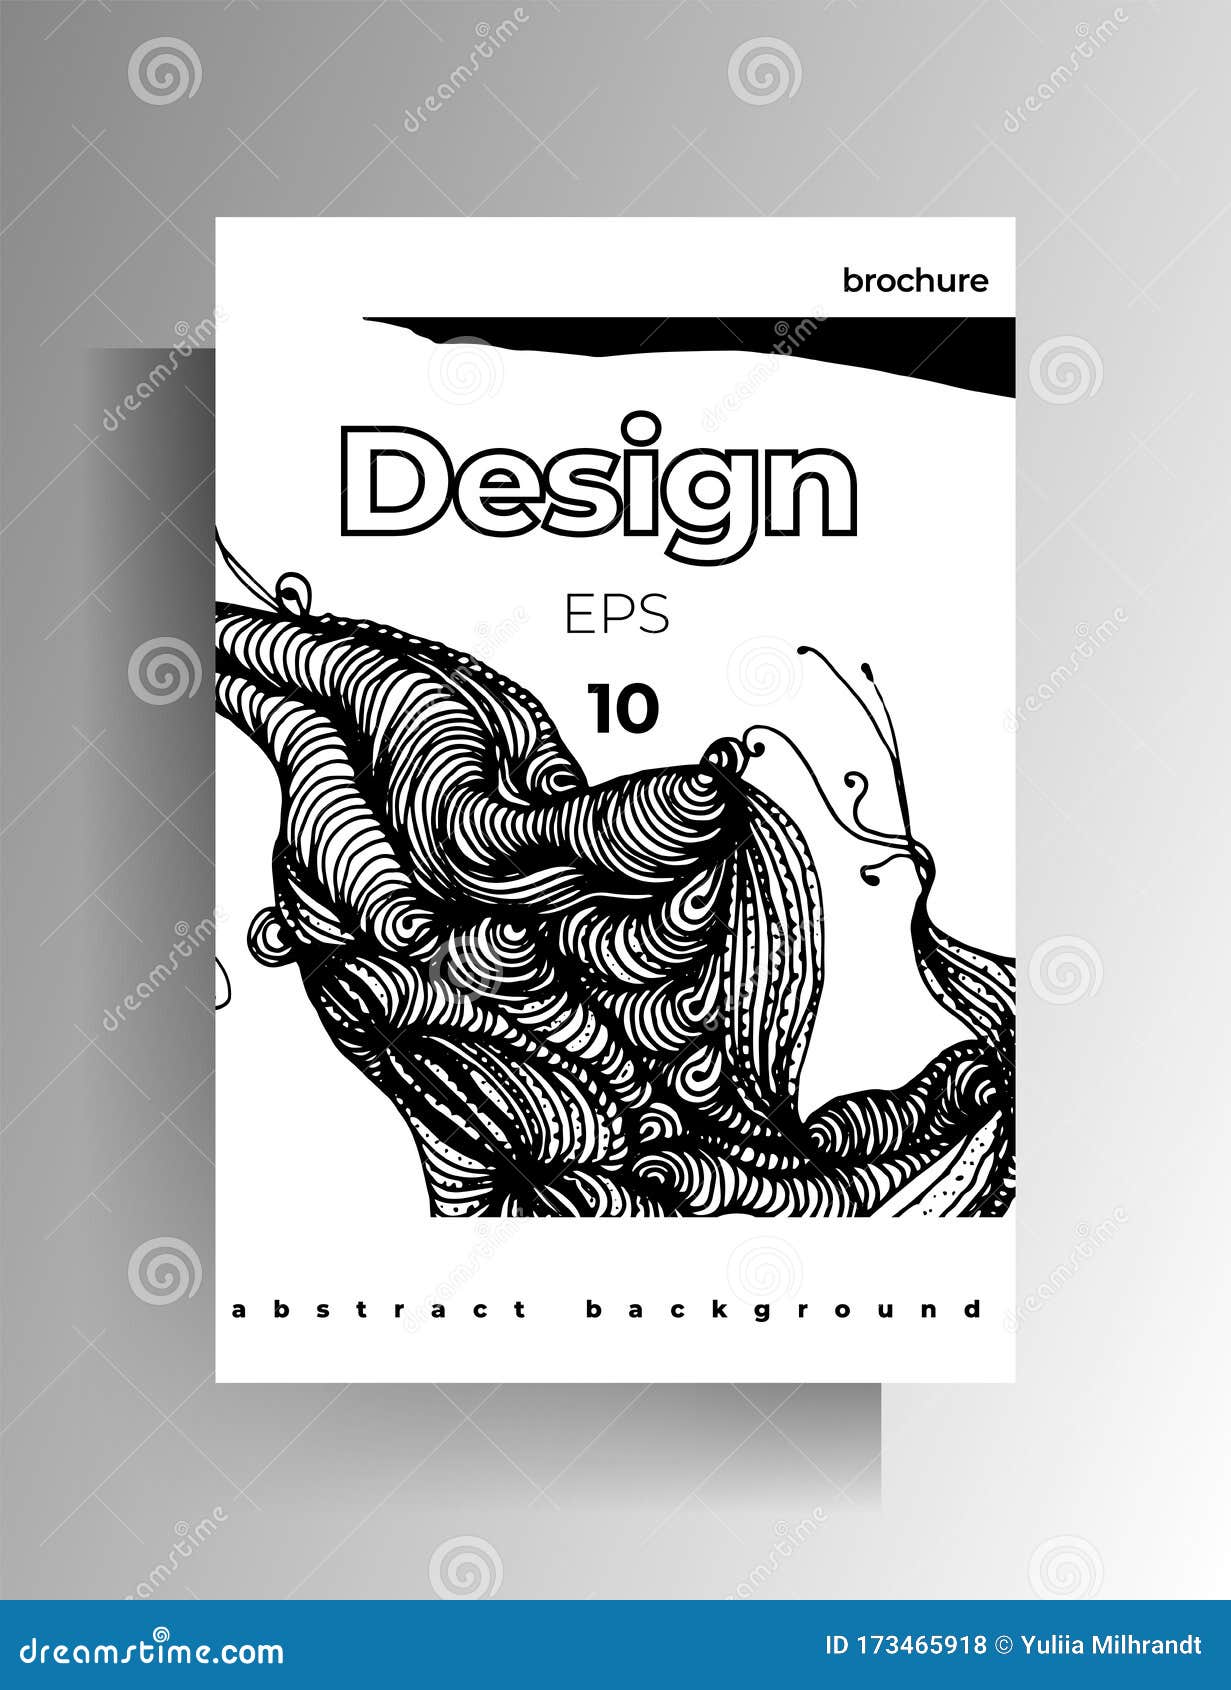 Diseño Para Afiches, Portada Para Libros, Revista Dibujado a Mano En Blanco  Y Negro Stock de ilustración - Ilustración de compartimiento, informe:  173465918